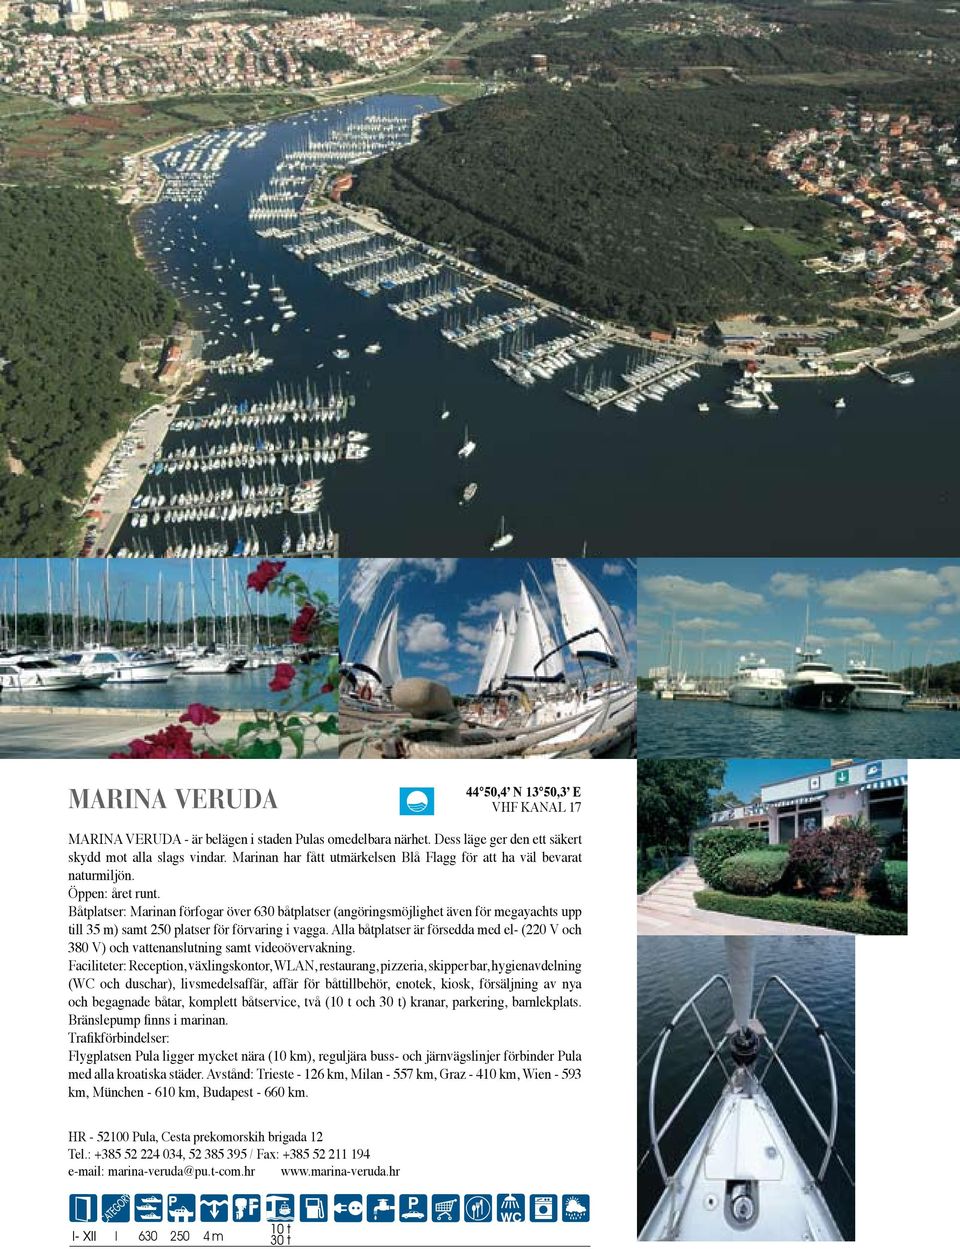 Båtplatser: Marinan förfogar över 630 båtplatser (angöringsmöjlighet även för megayachts upp till 35 m) samt 250 platser för förvaring i vagga.